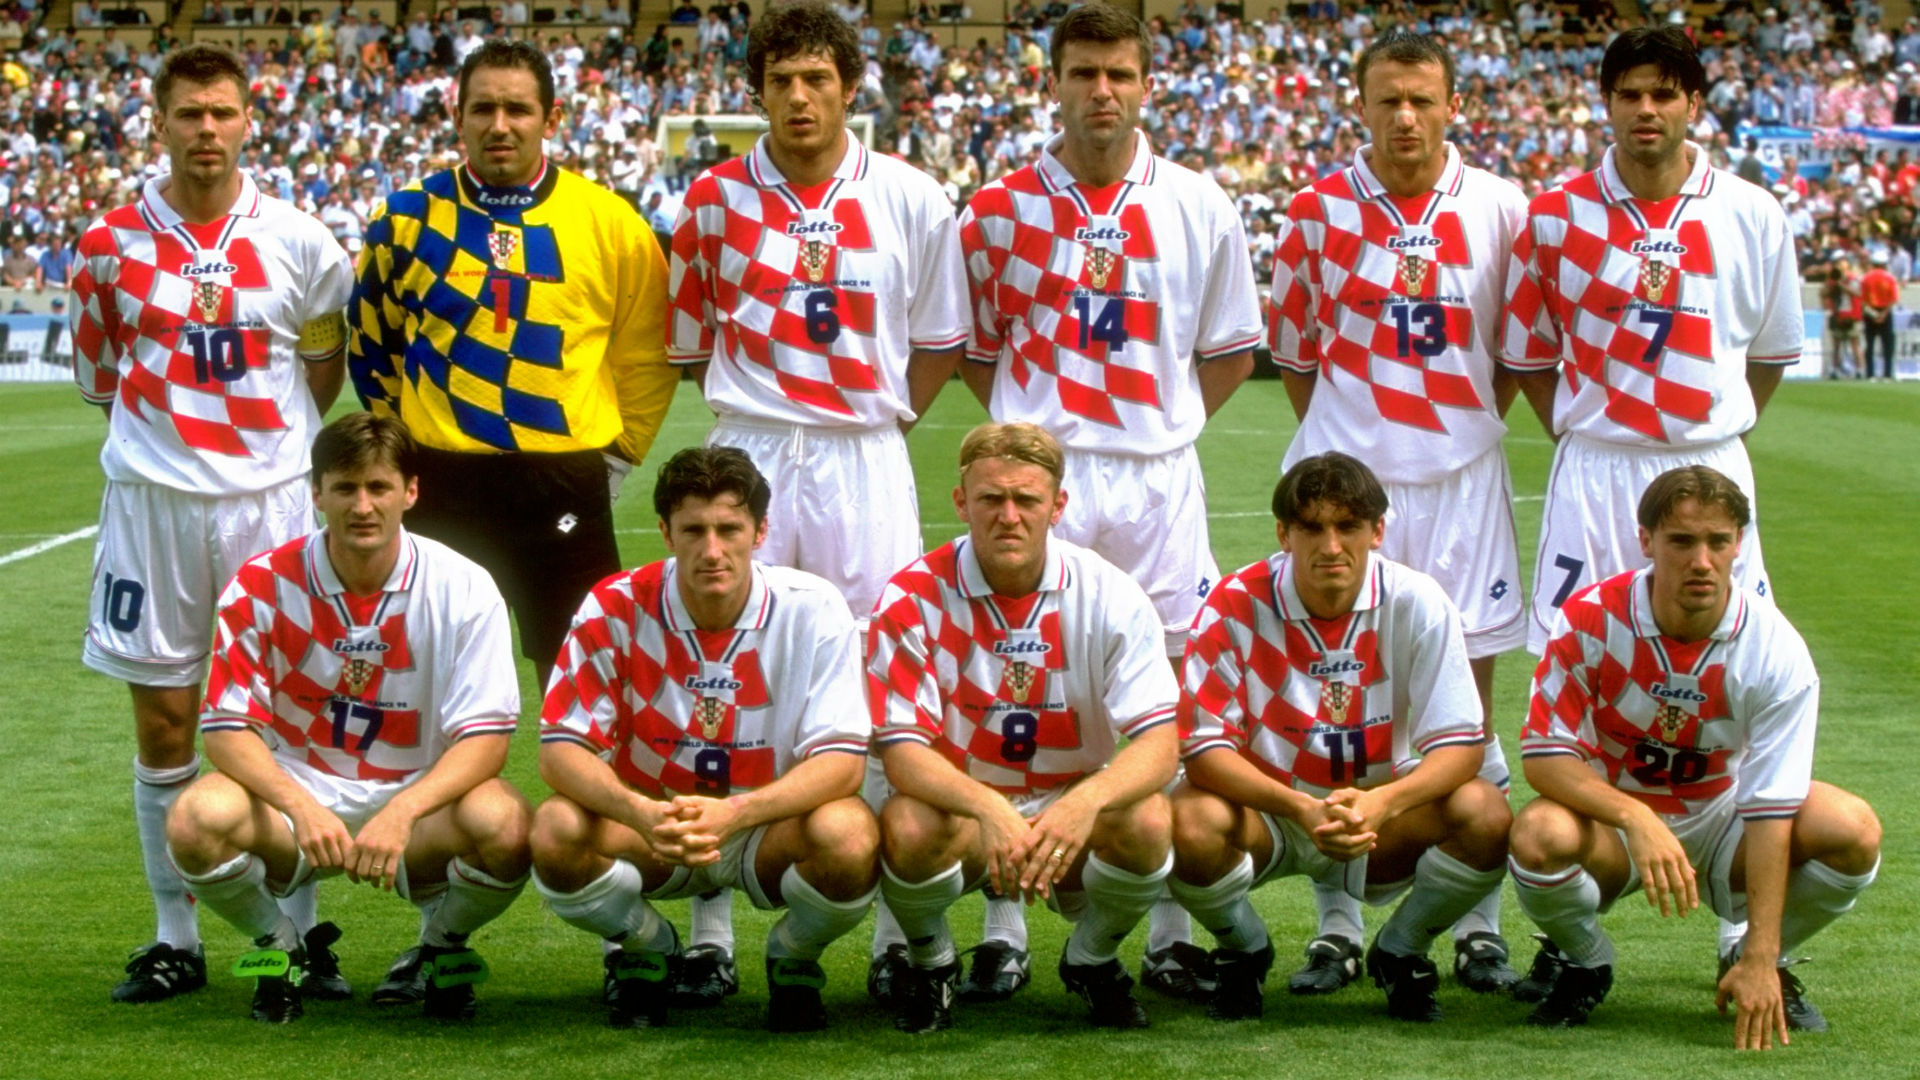 hrvatska-croatia-1998_19drqnow025gd1ts7j0w2zyf2p.jpg